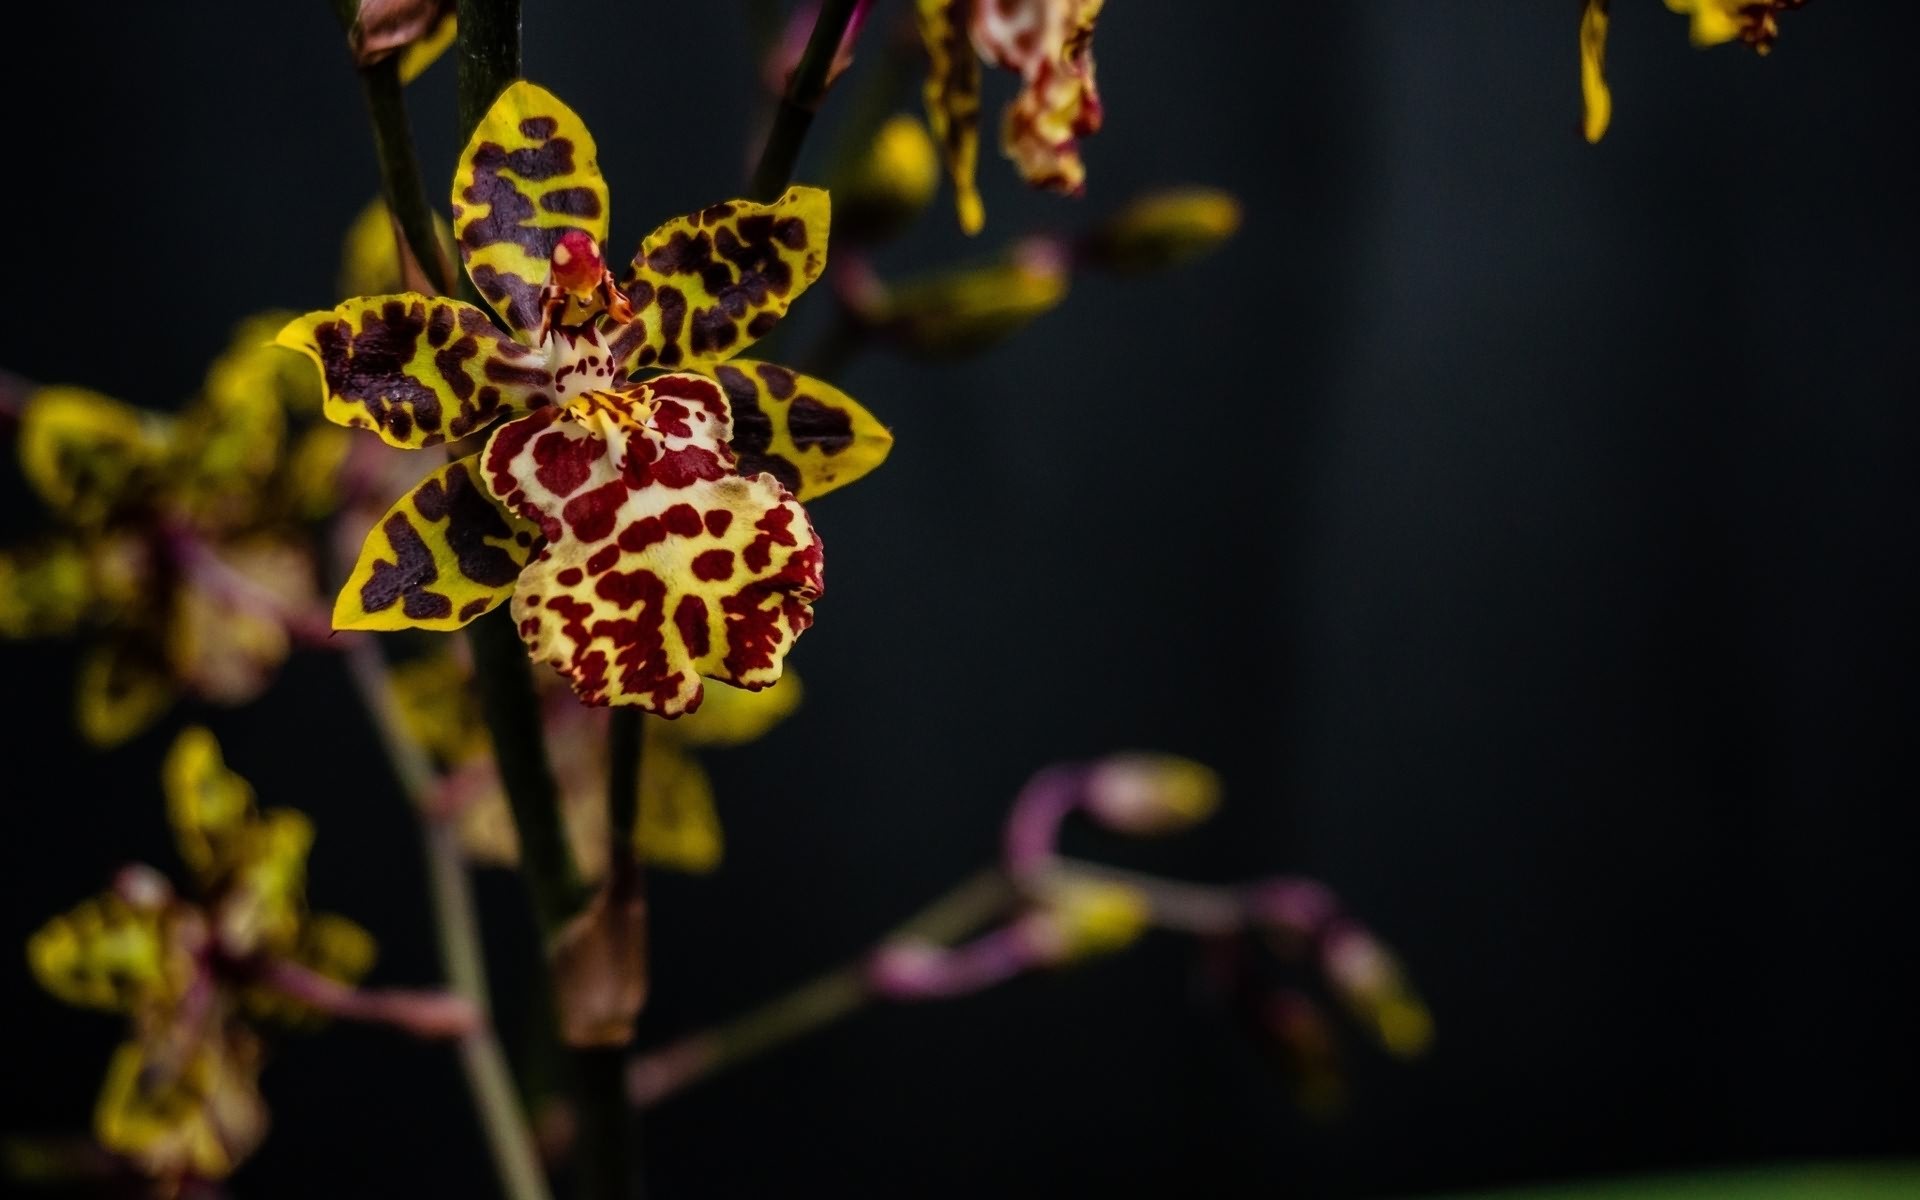 Скачать обои Леопардовая Орхидея на телефон бесплатно